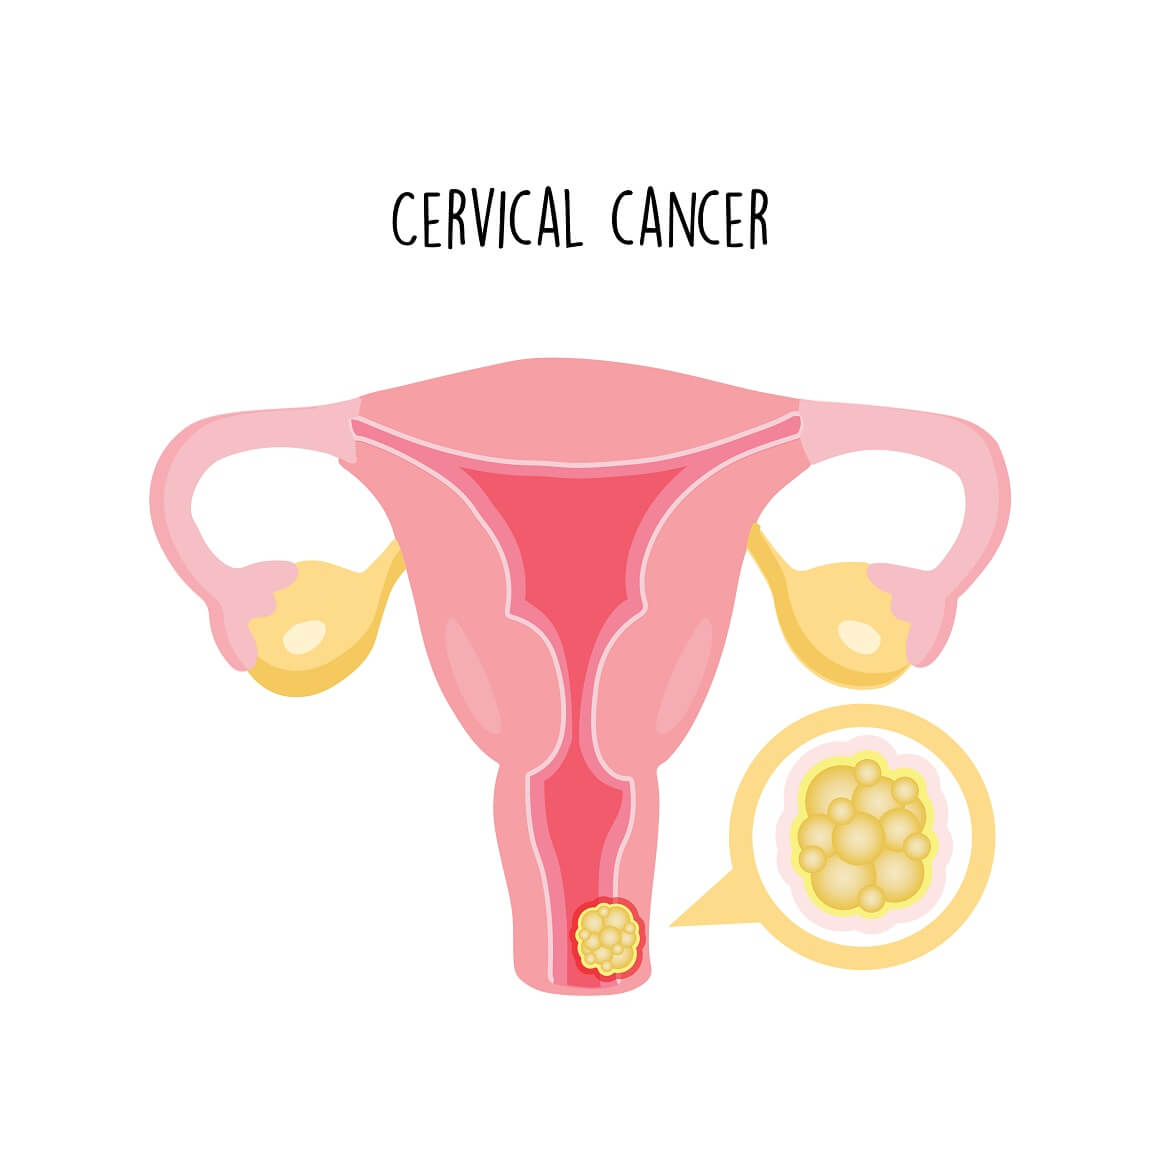 Rak vrata maternice je abnormalni rast stanica u sluznici vrata maternice na nekontroliran način, a koje na kraju formiraju tumor